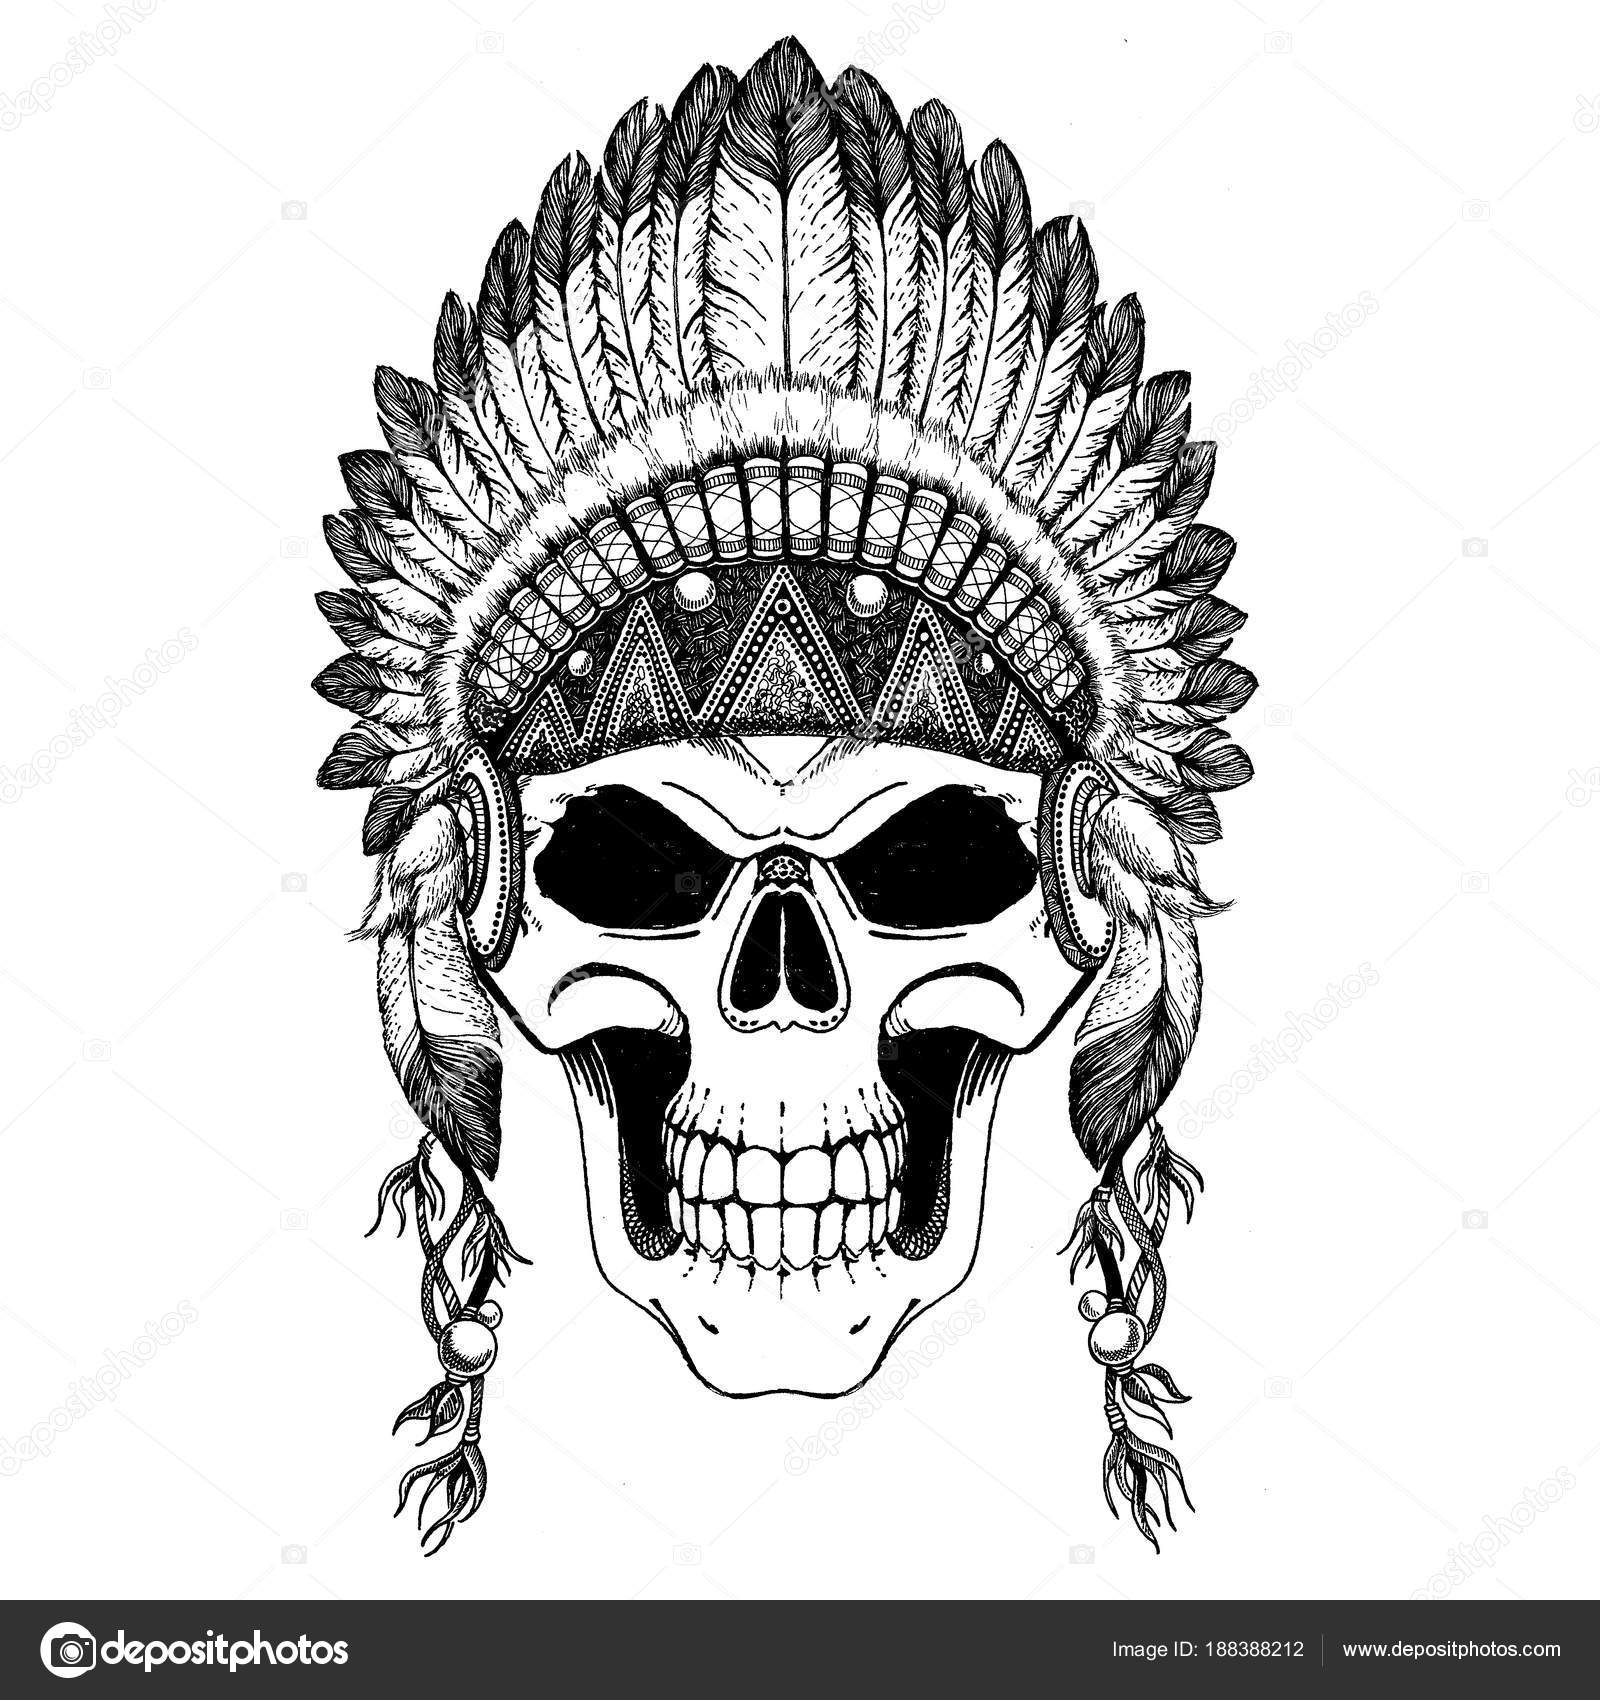 Impresionante corona de plumas en un cráneo, repitiendo el indio. Técnica  de ilustración gráfica, punteado. Hombre muerto. Ilustración étnica tribal.  Estilo boho chic. Salvaje y libre Ilustración de stock de ©Helen_F  #188388212